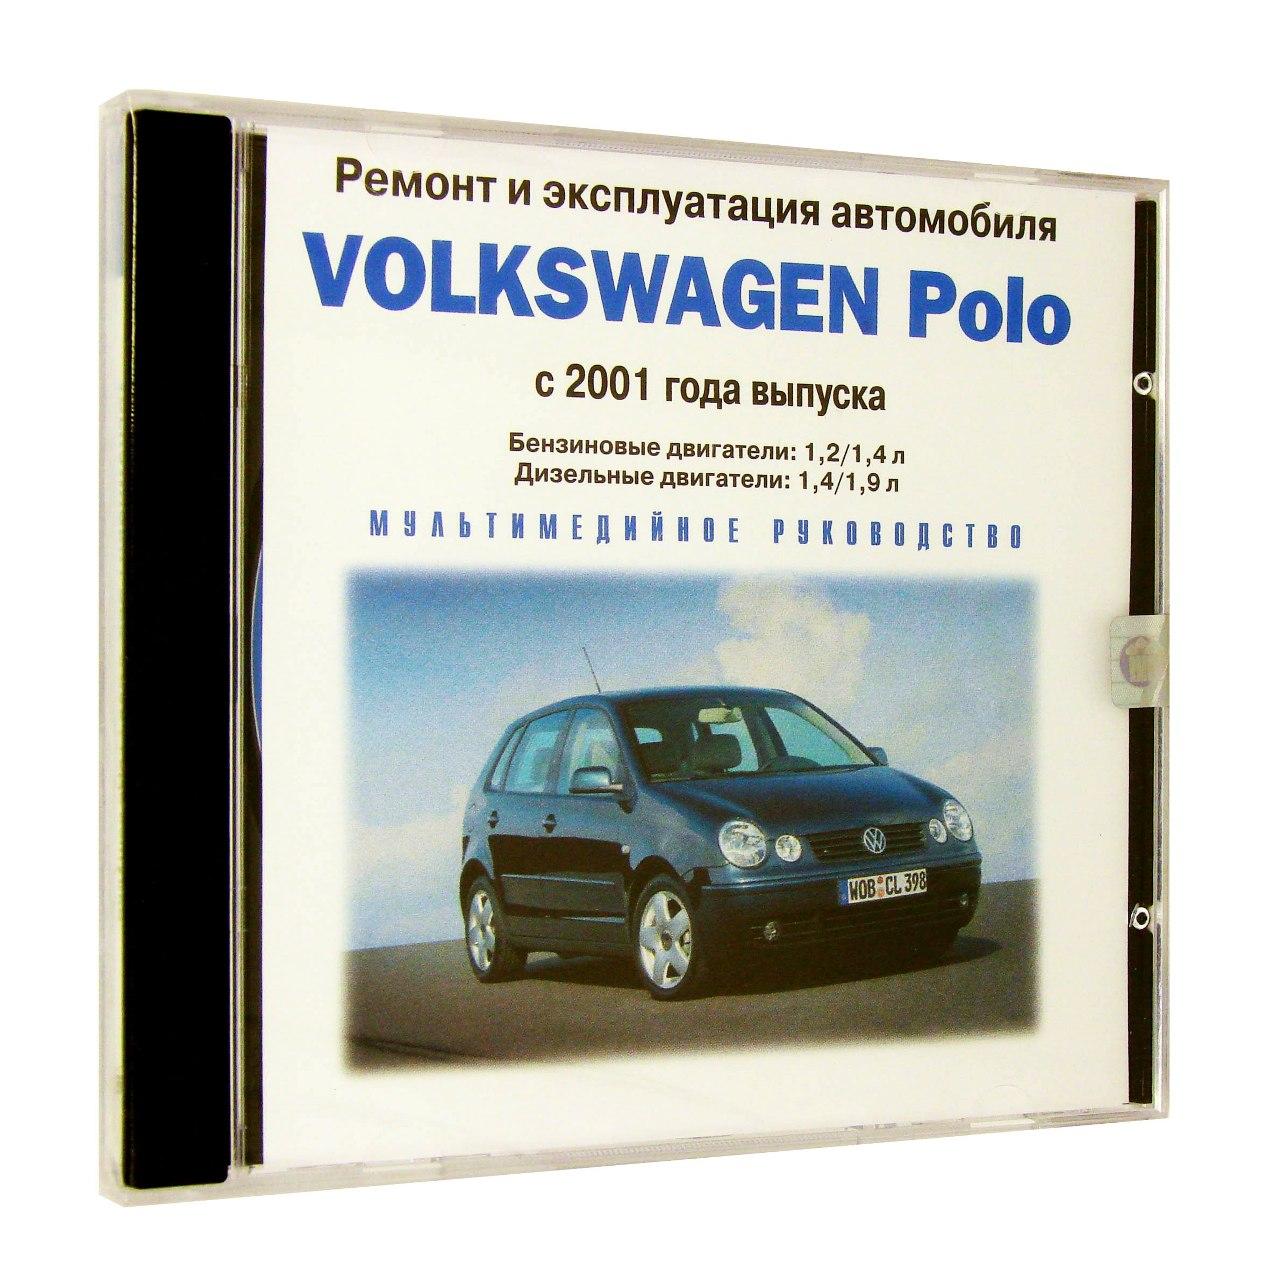 Компьютерный компакт-диск Volkswagen Polo с 2001 Ремонт и эксплуатация автомобиля. (ПК), фирма "RMG Multimedia", 1CD